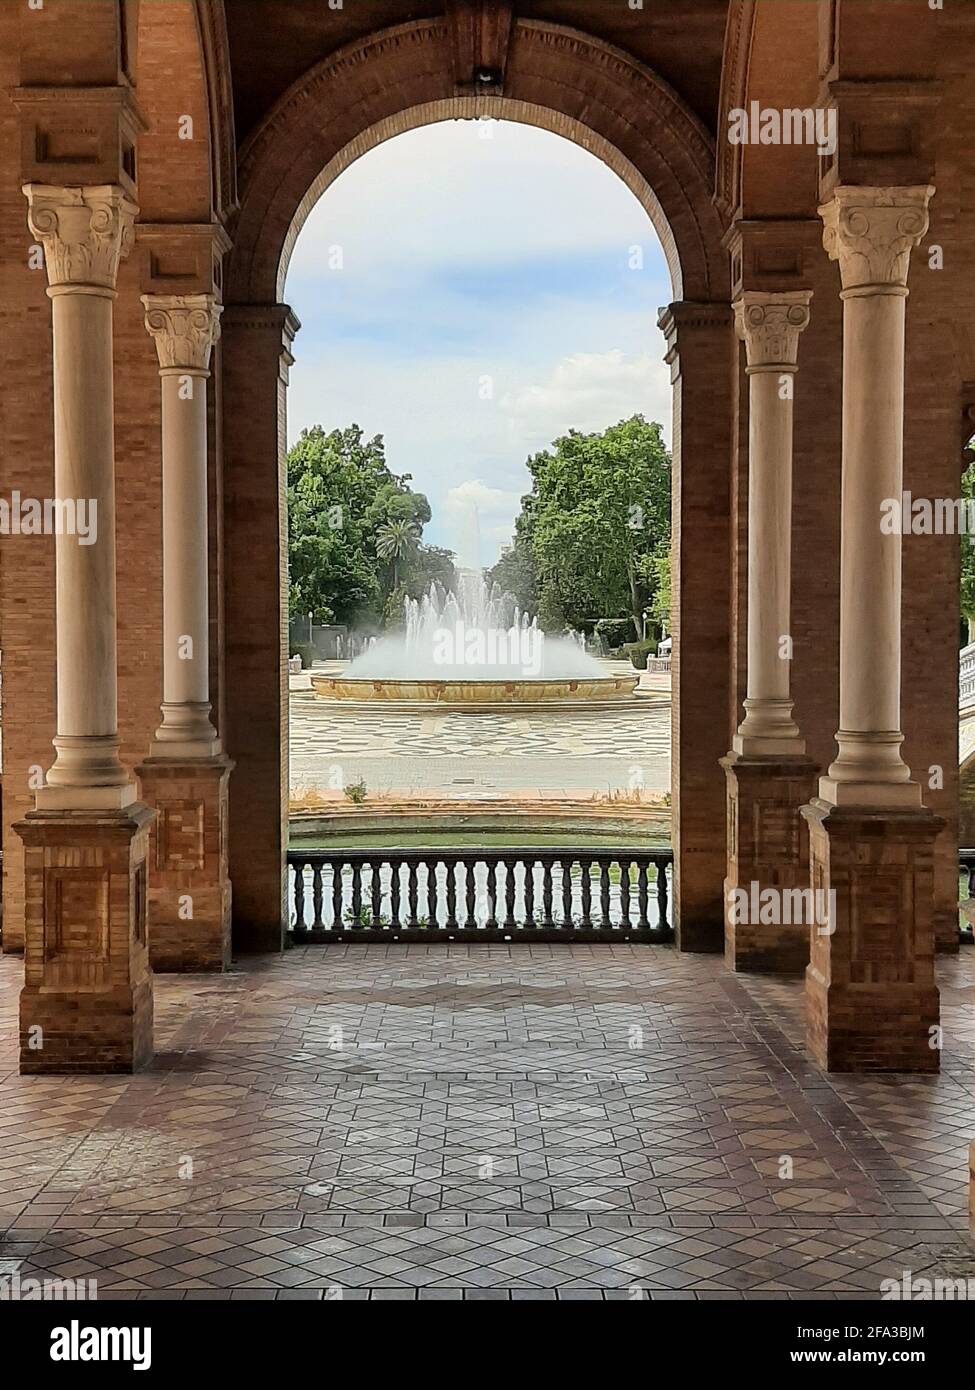 Water fountain in Plaza de España in Seville Stock Photo